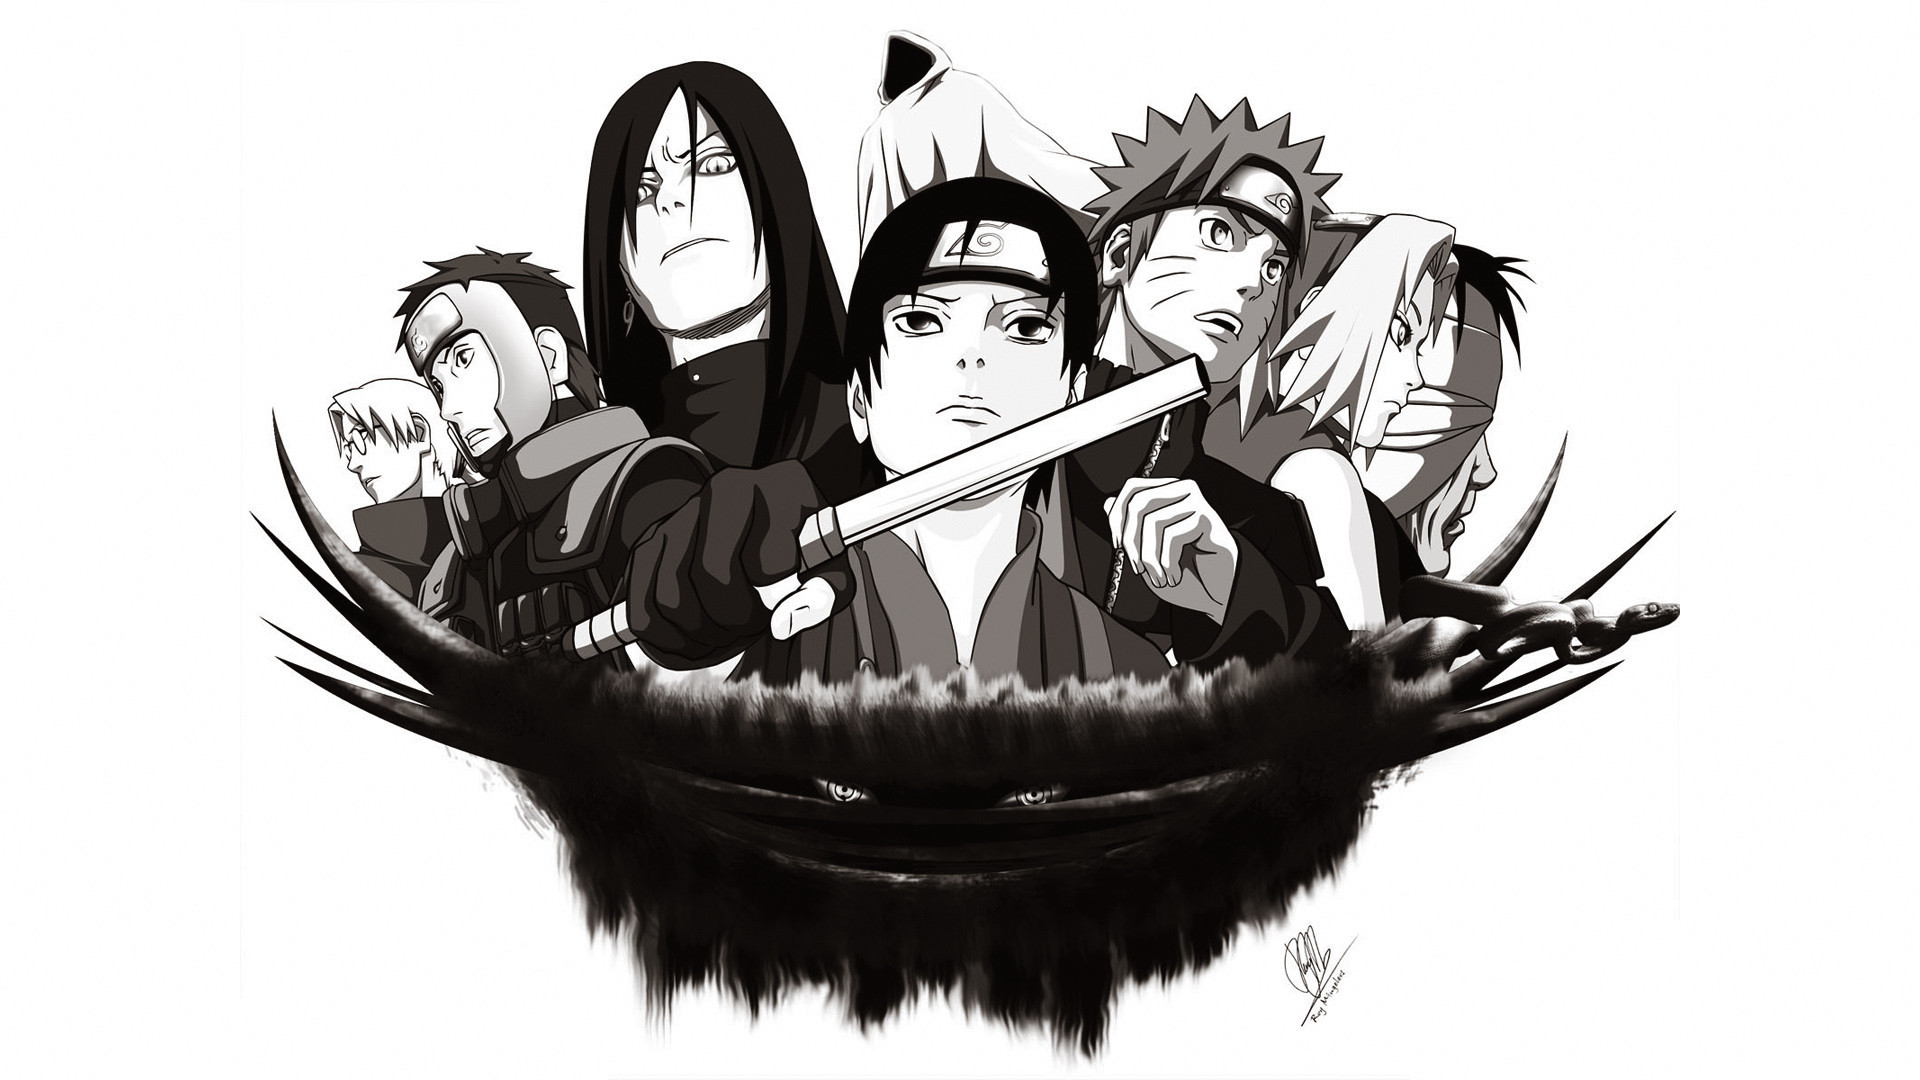 HD desktop wallpaper: Anime, Naruto, Sakura Haruno, Naruto Uzumaki, Yamato ( Naruto), Orochimaru (Naruto), Kabuto Yakushi download free picture #407305